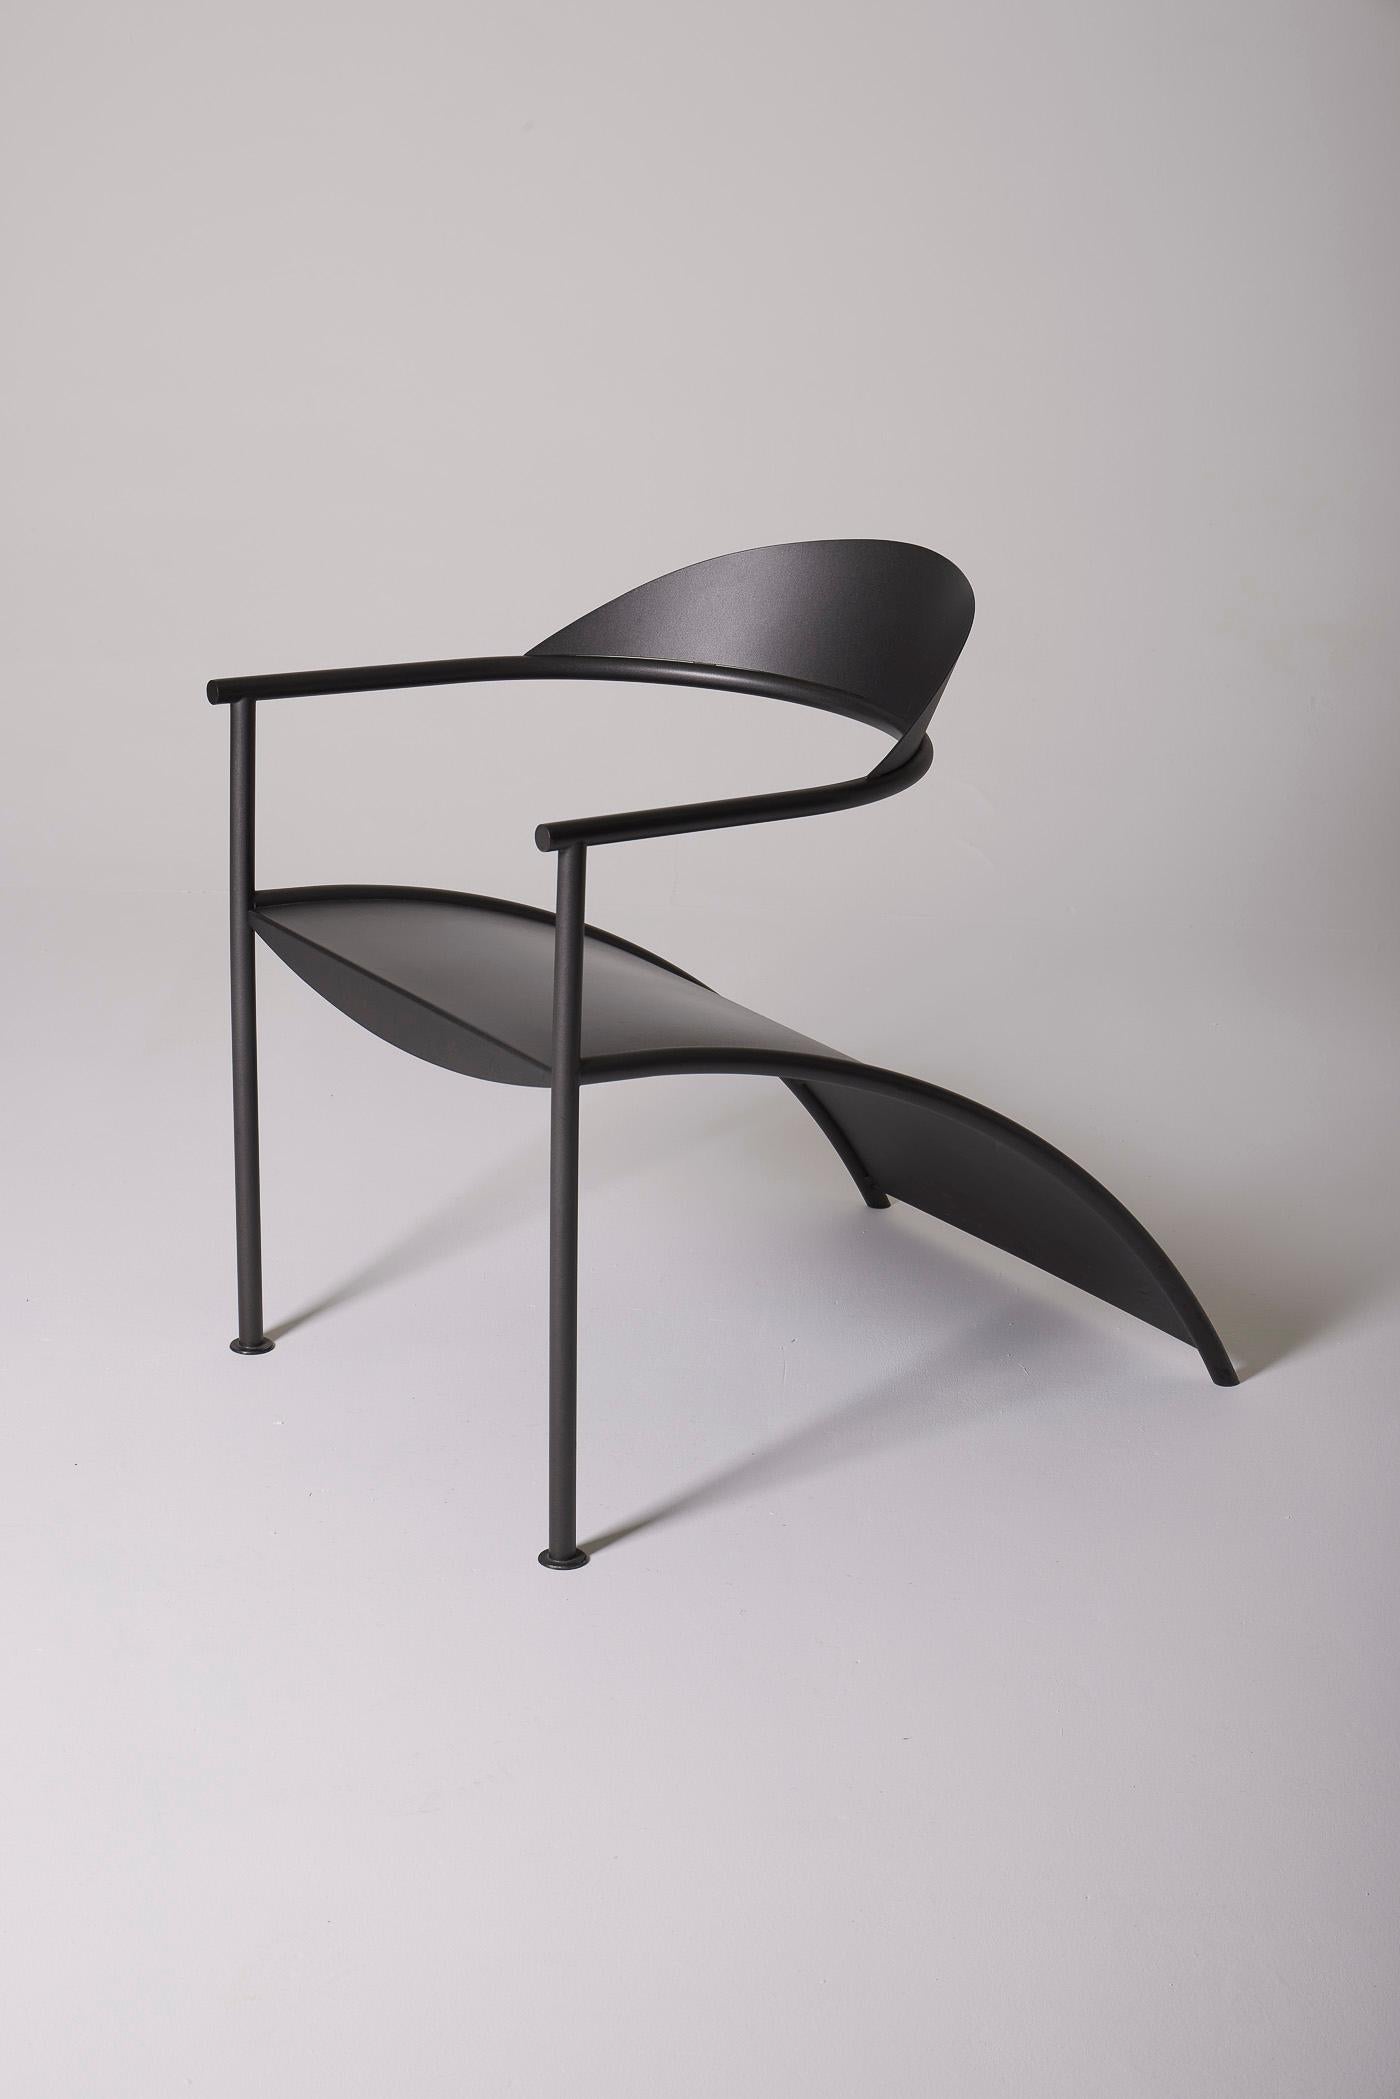 Modèle de chaise Pat Conley II du designer Philippe Starck pour XO, datant des années 1980. Structure en métal anodisé gris. En parfait état.
DV515